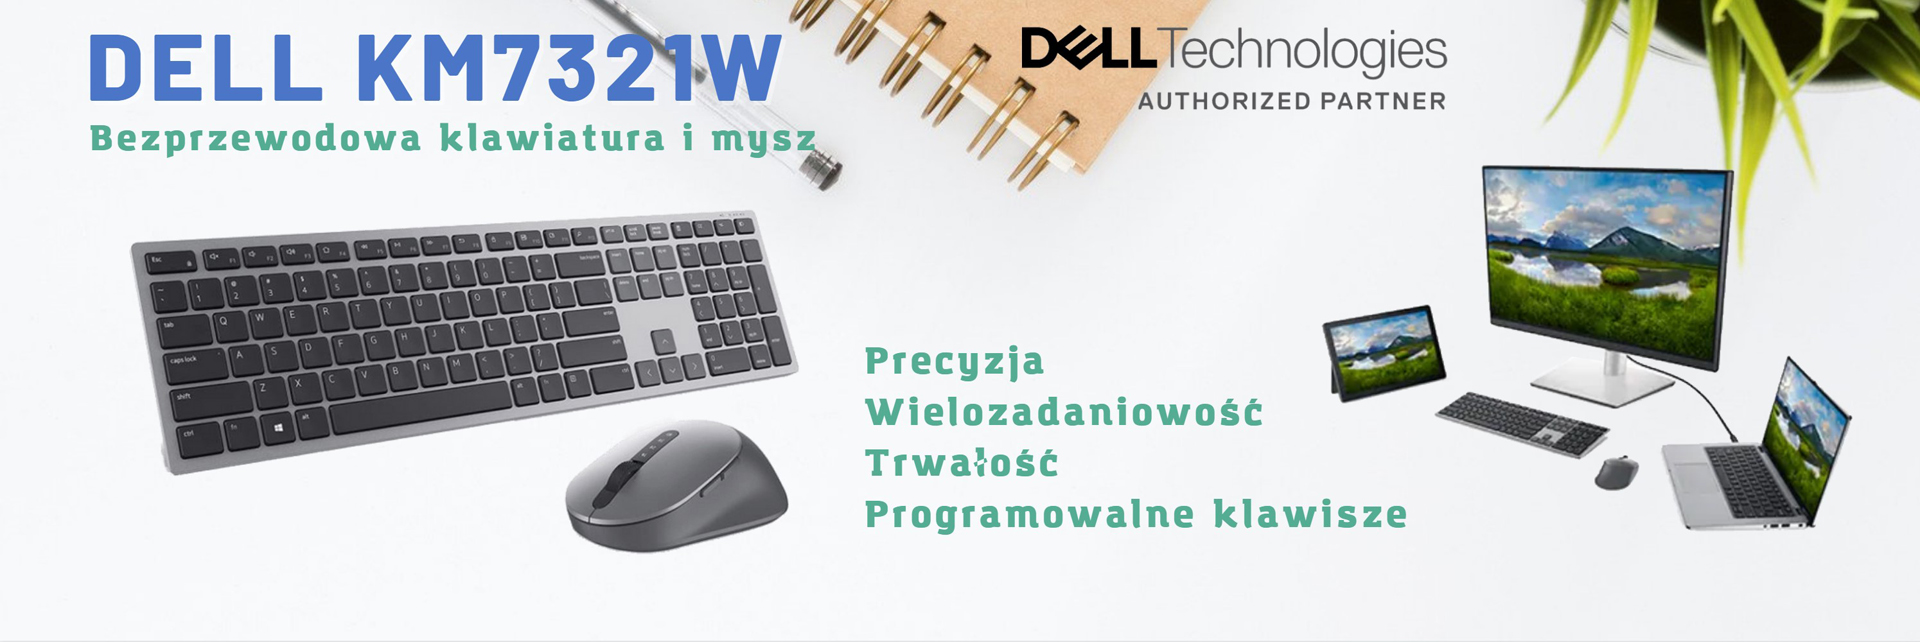 Dell KM7321W Bezprzewodowa klawiatura i mysz Dell Premier do wielu urządzeń